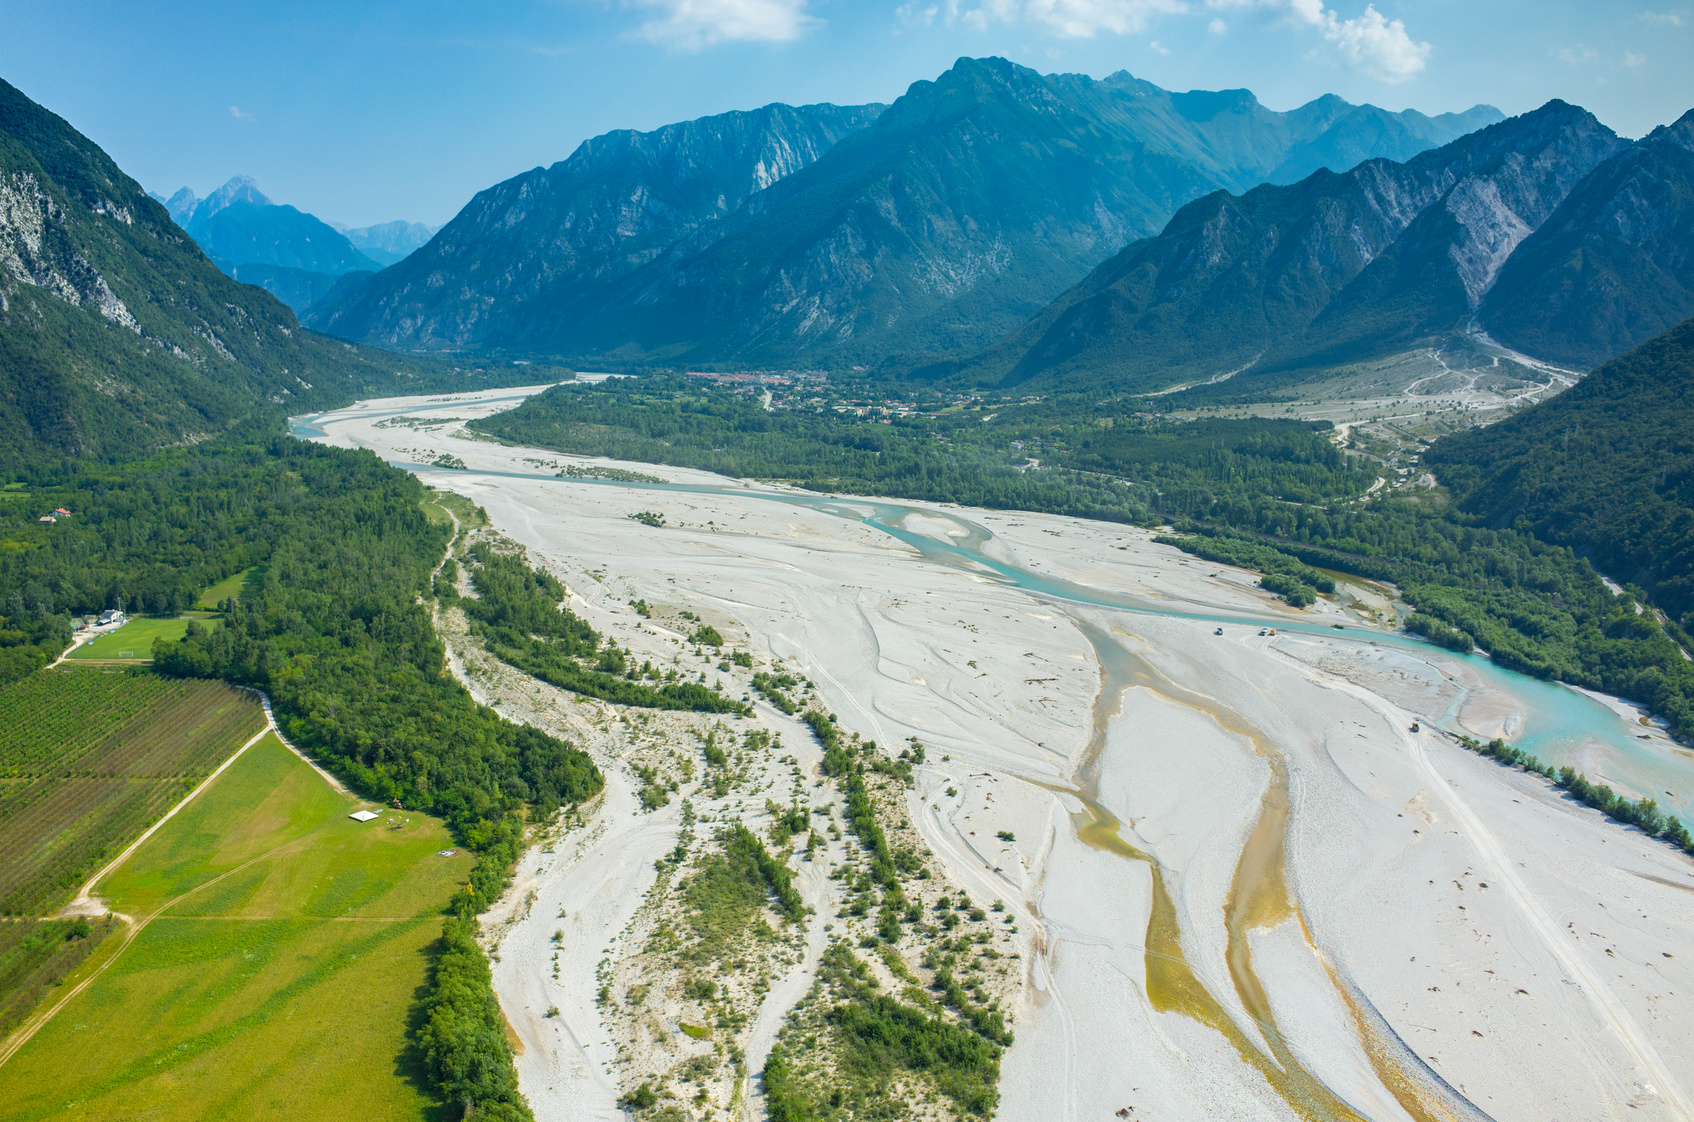 Luftaufnahme des Flusses Tagliamento in Italien mit einem Geflecht aus ausgedehnten Geröllflächen, Haupt- und Nebenarmen